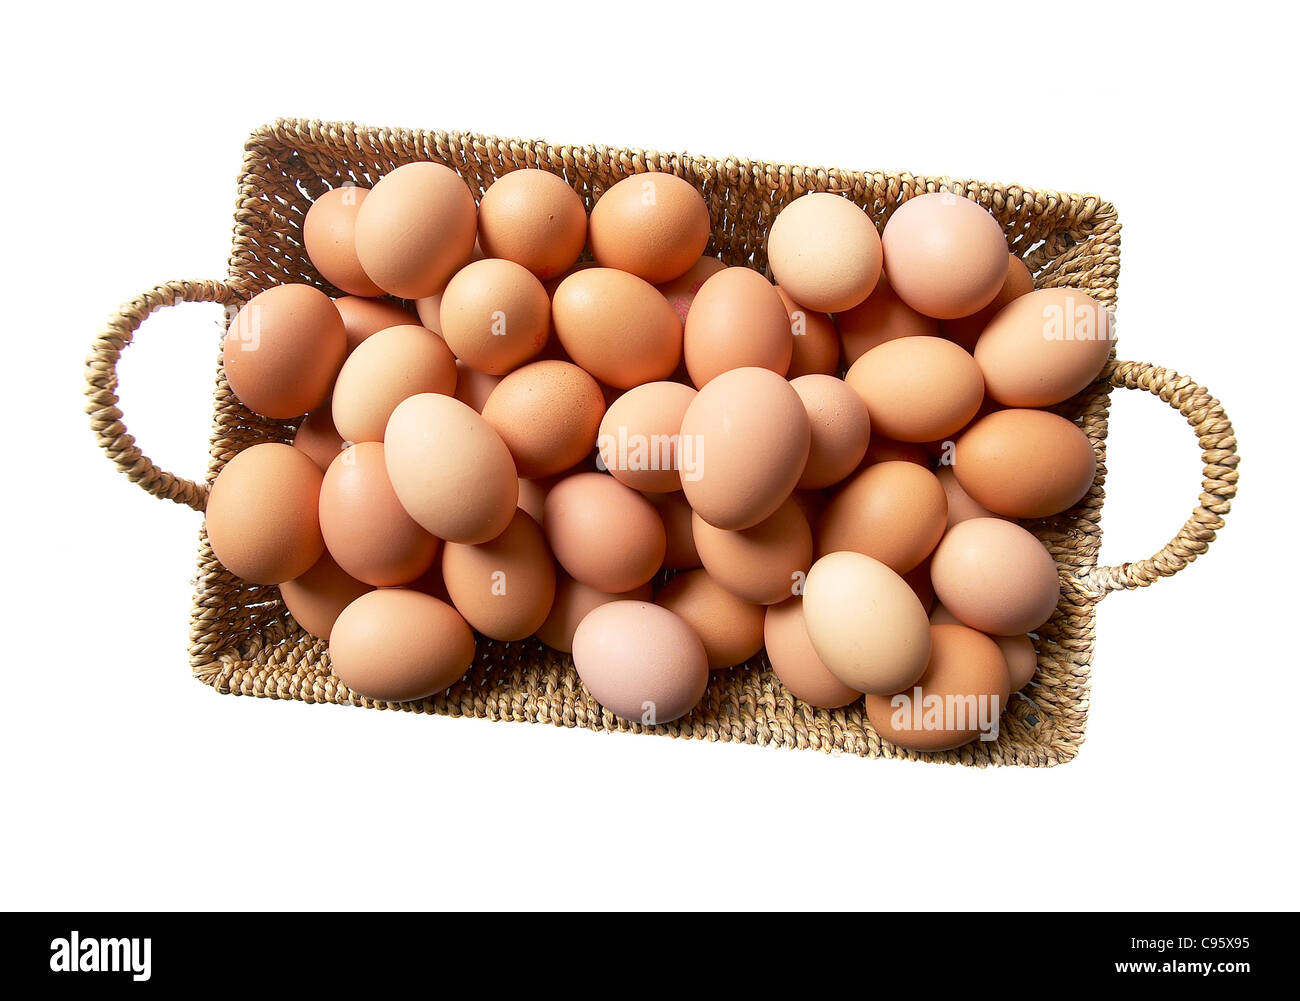 Muchos huevos en una sola canasta Foto de stock